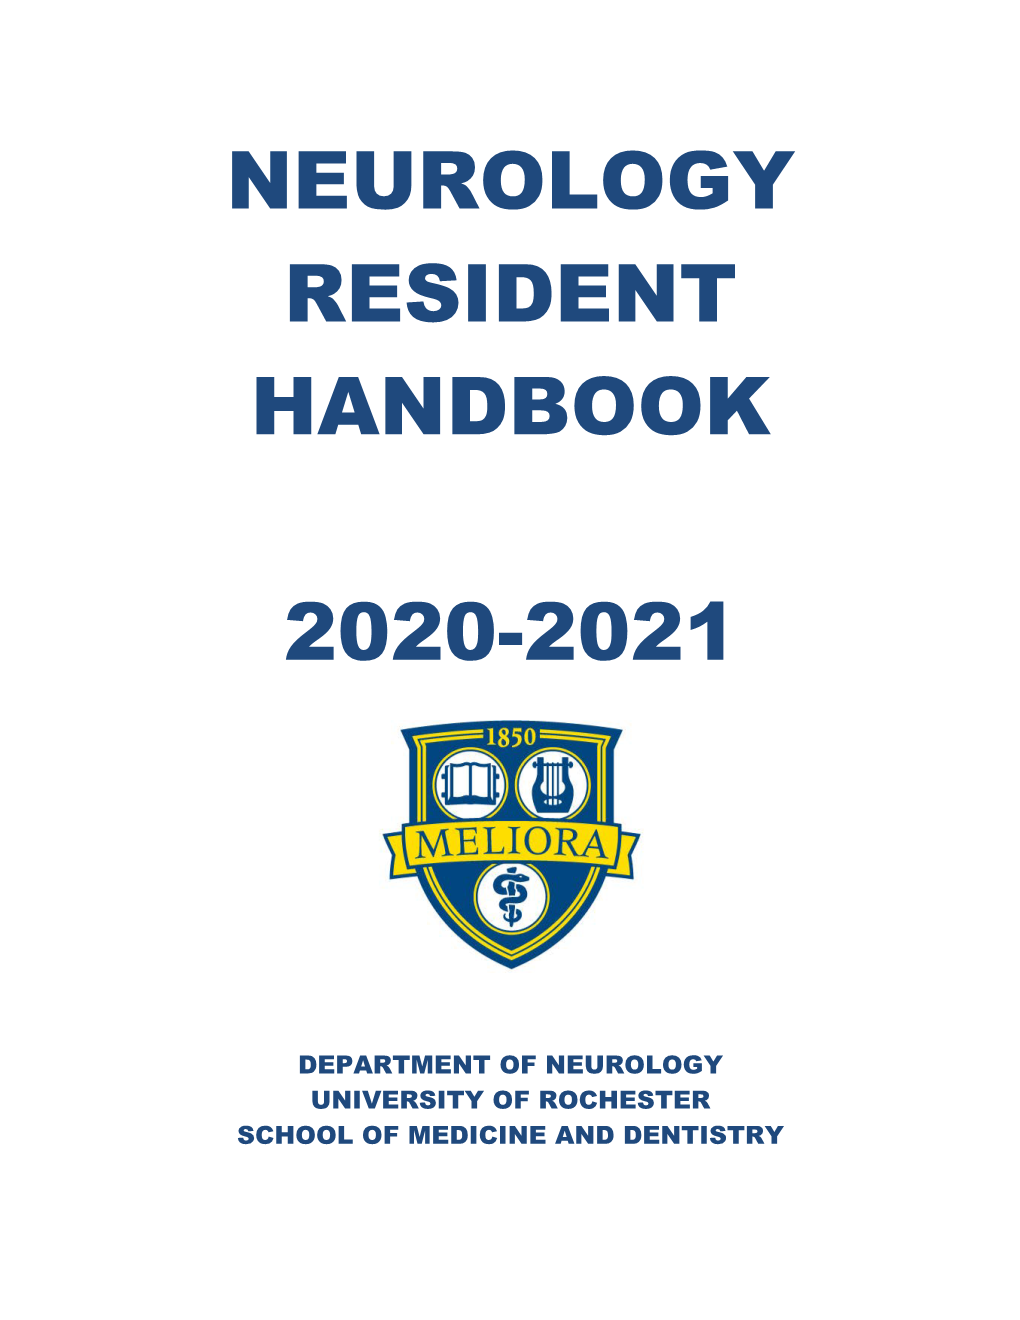 Neurology Resident Handbook 2020-2021